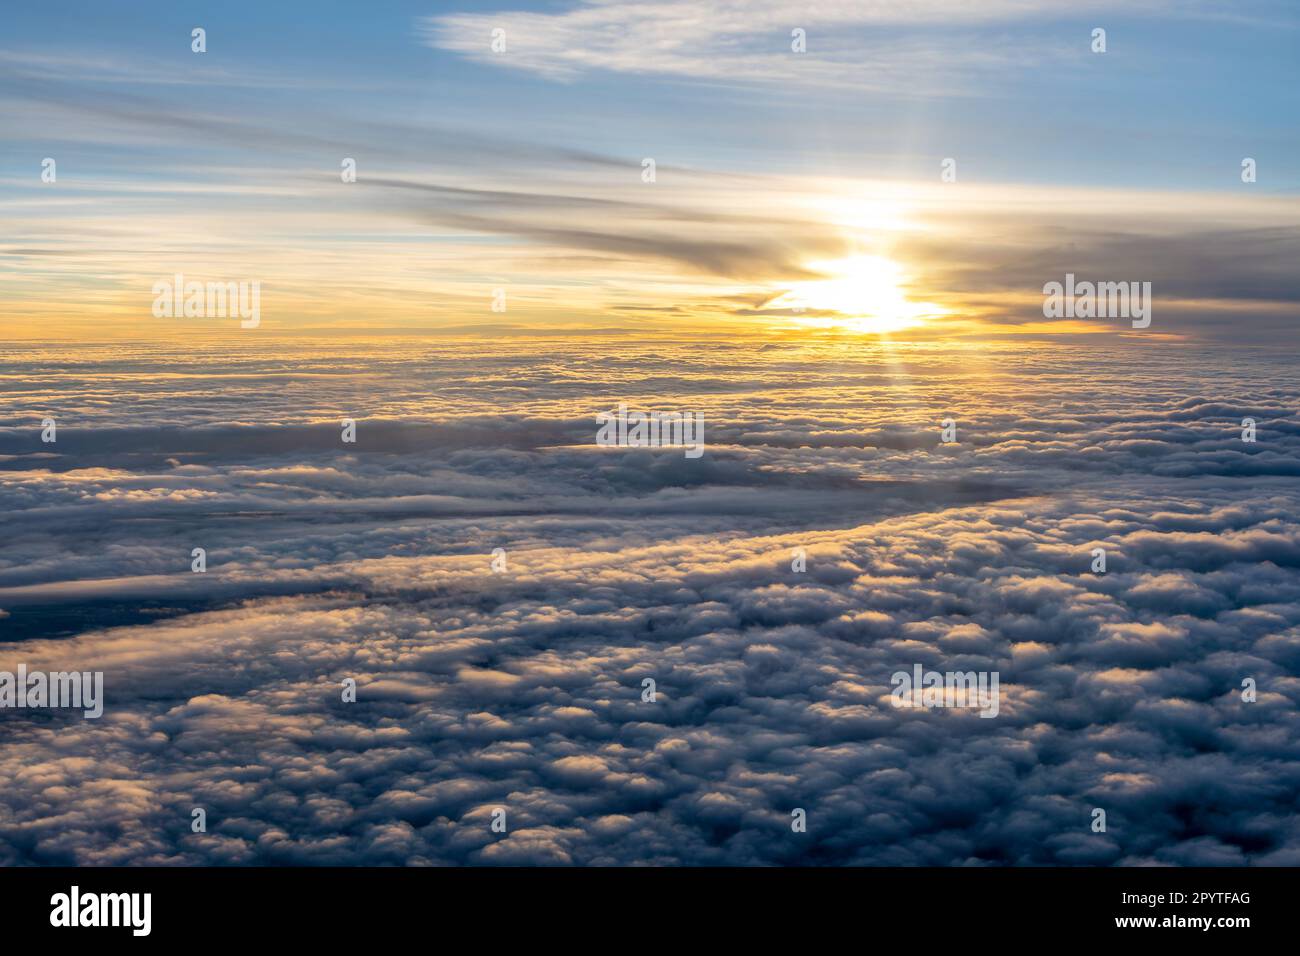 Soleil au-dessus d'une mer de nuages vus à travers la fenêtre de l'avion au coucher du soleil Banque D'Images